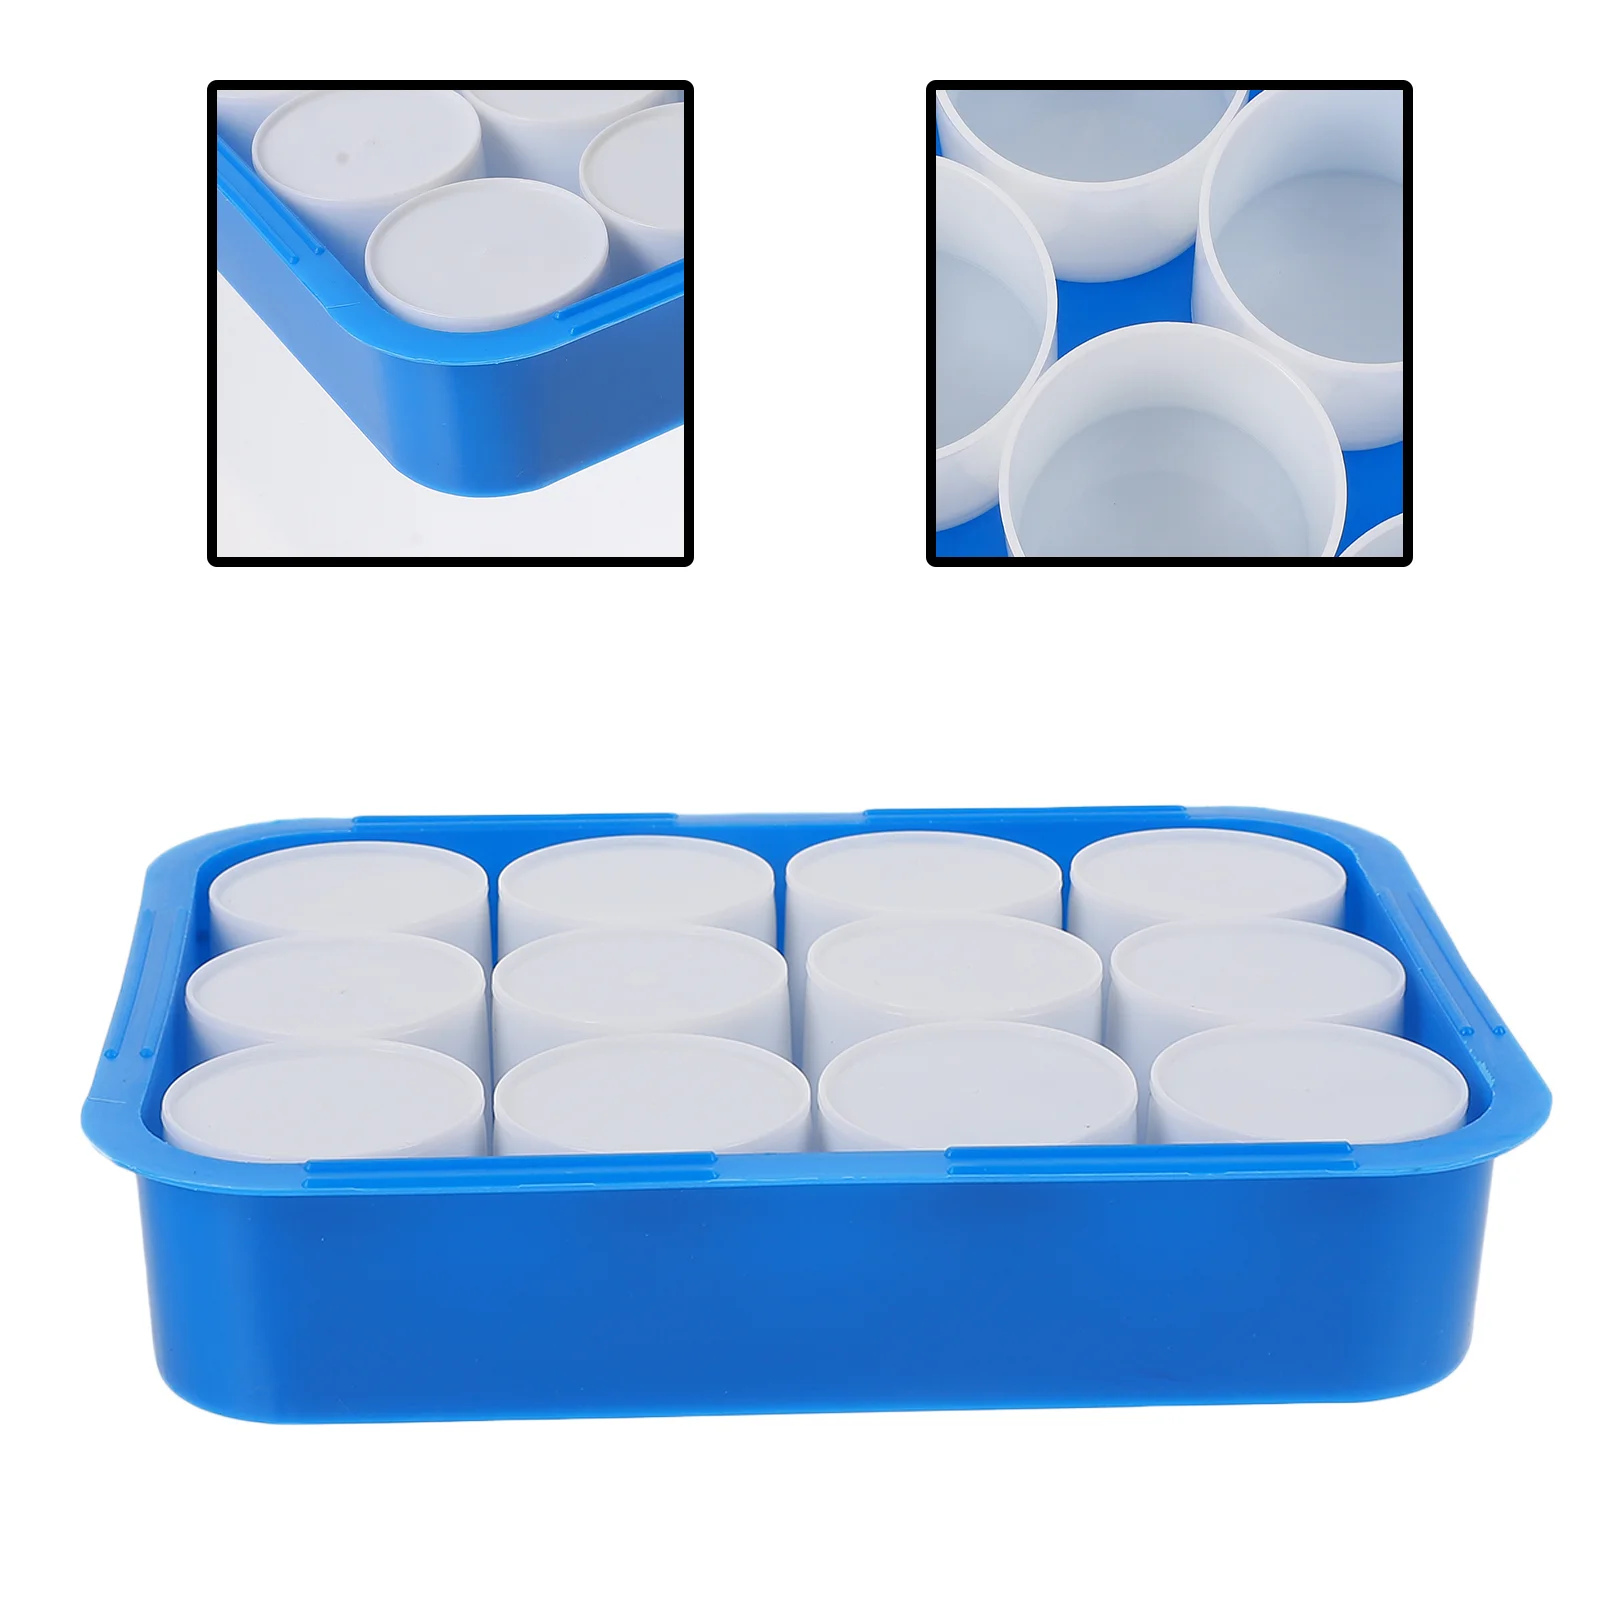 

Цветная коробка для чашек, пластиковый контейнер, тарелка для дисплея, пустые чашки, миксер, лоток для пигмента для каллиграфии, практичный держатель